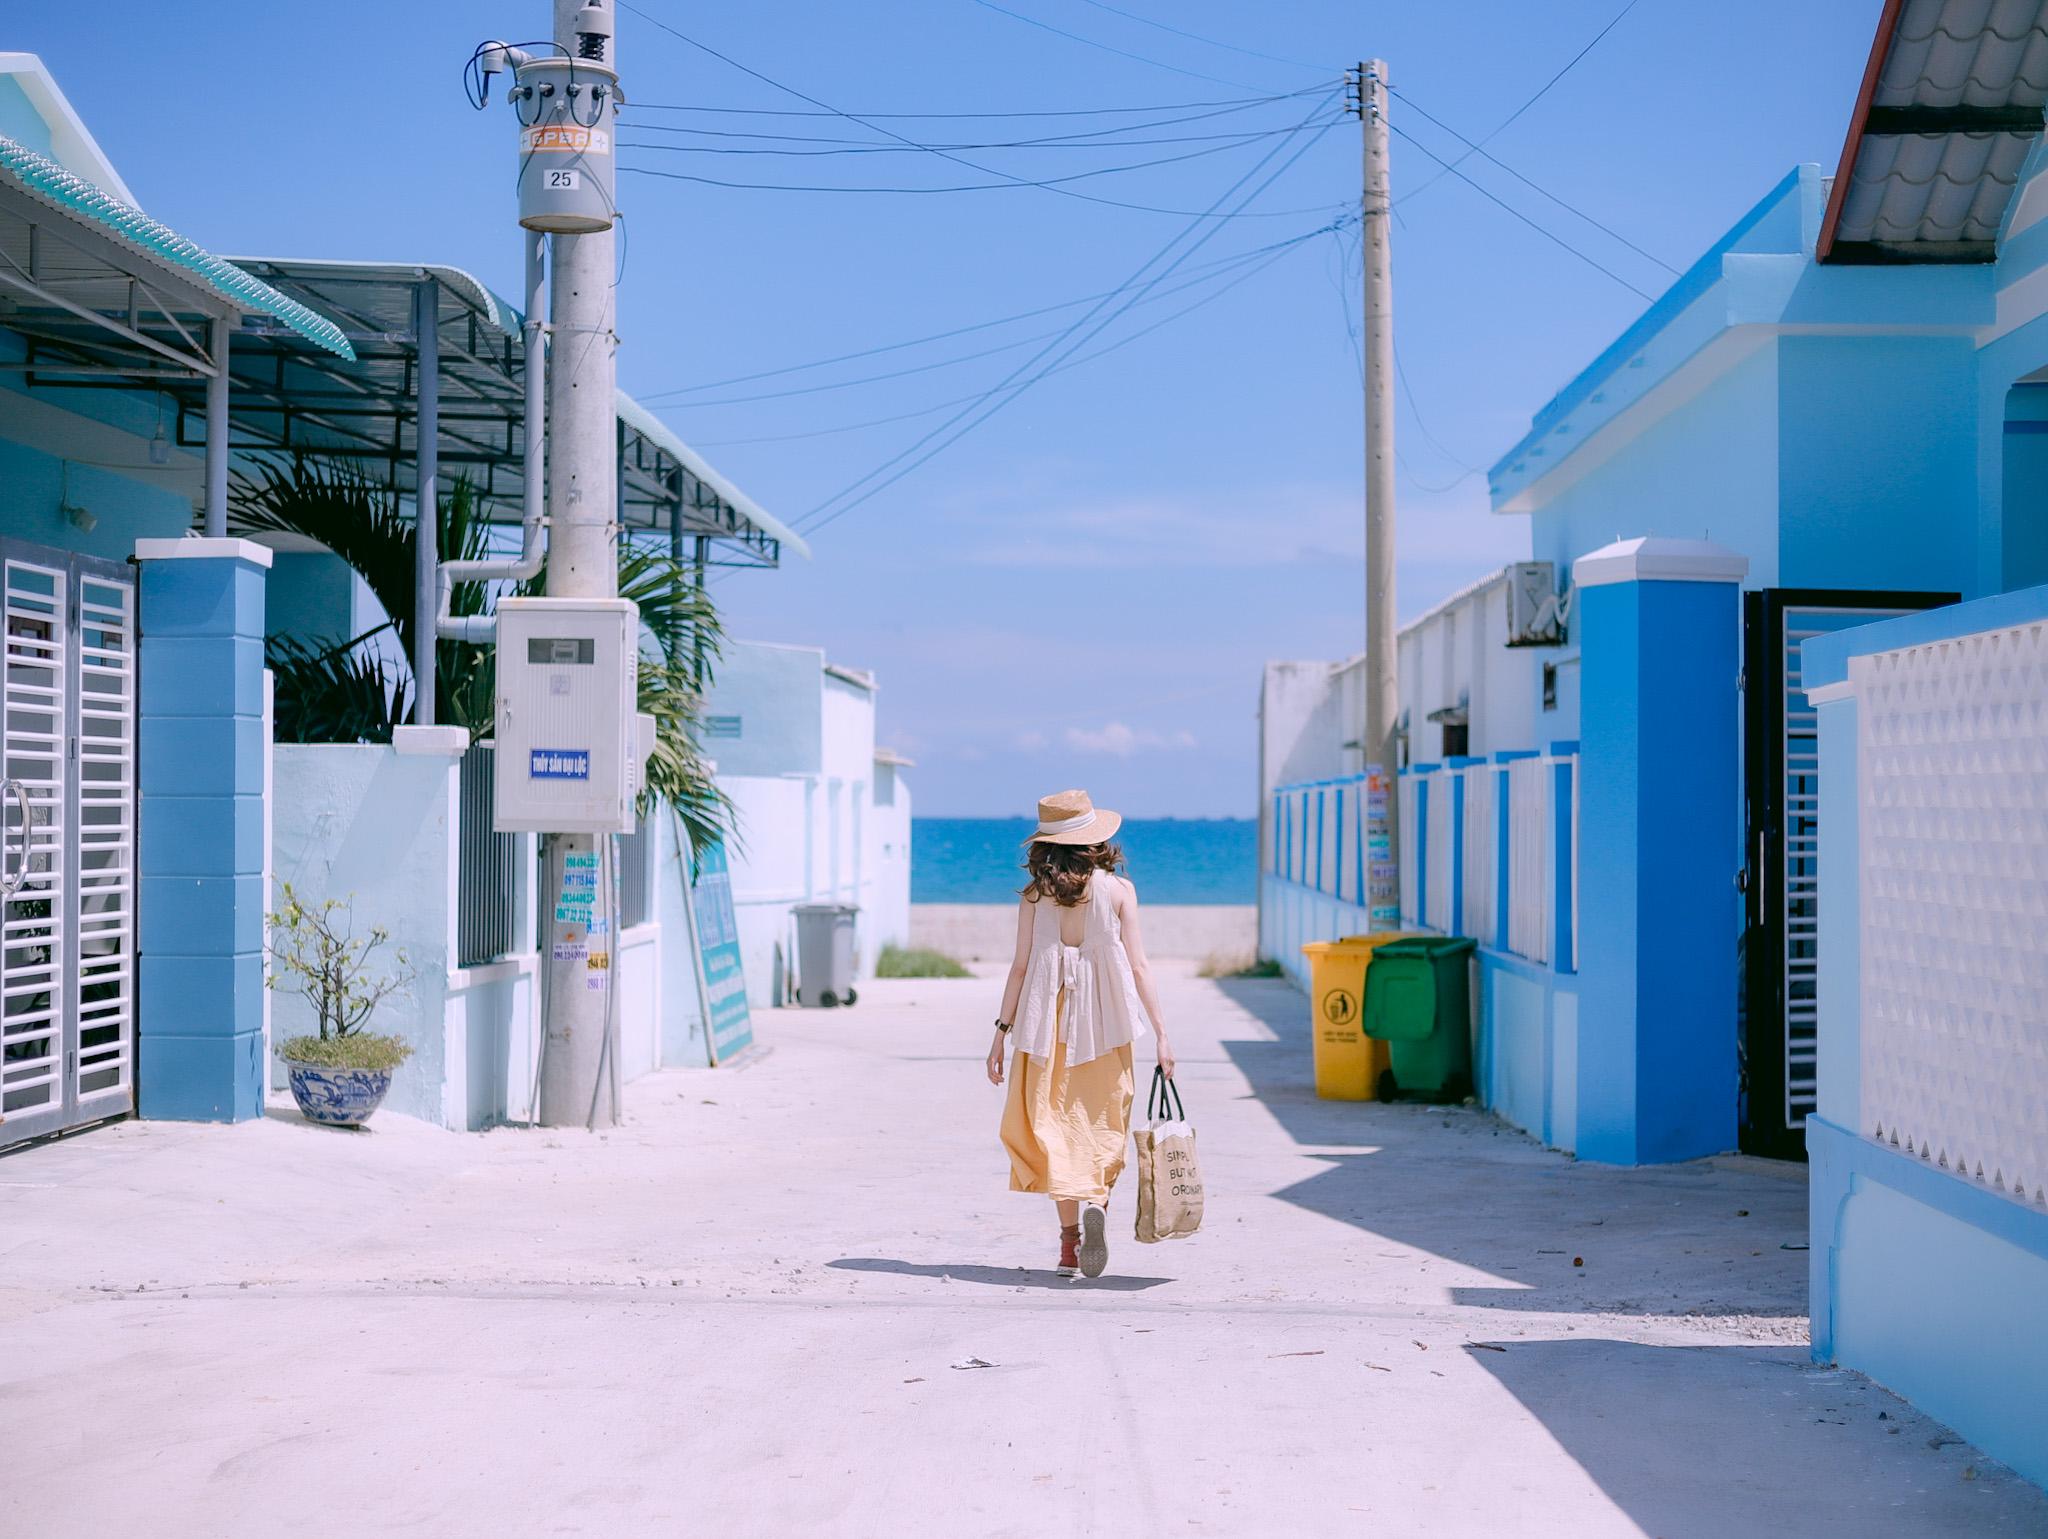 Đến 'Địa Trung Hải' của Việt Nam, ngắm biển xanh cát trắng và làng chài đẹp mê hồn - 6